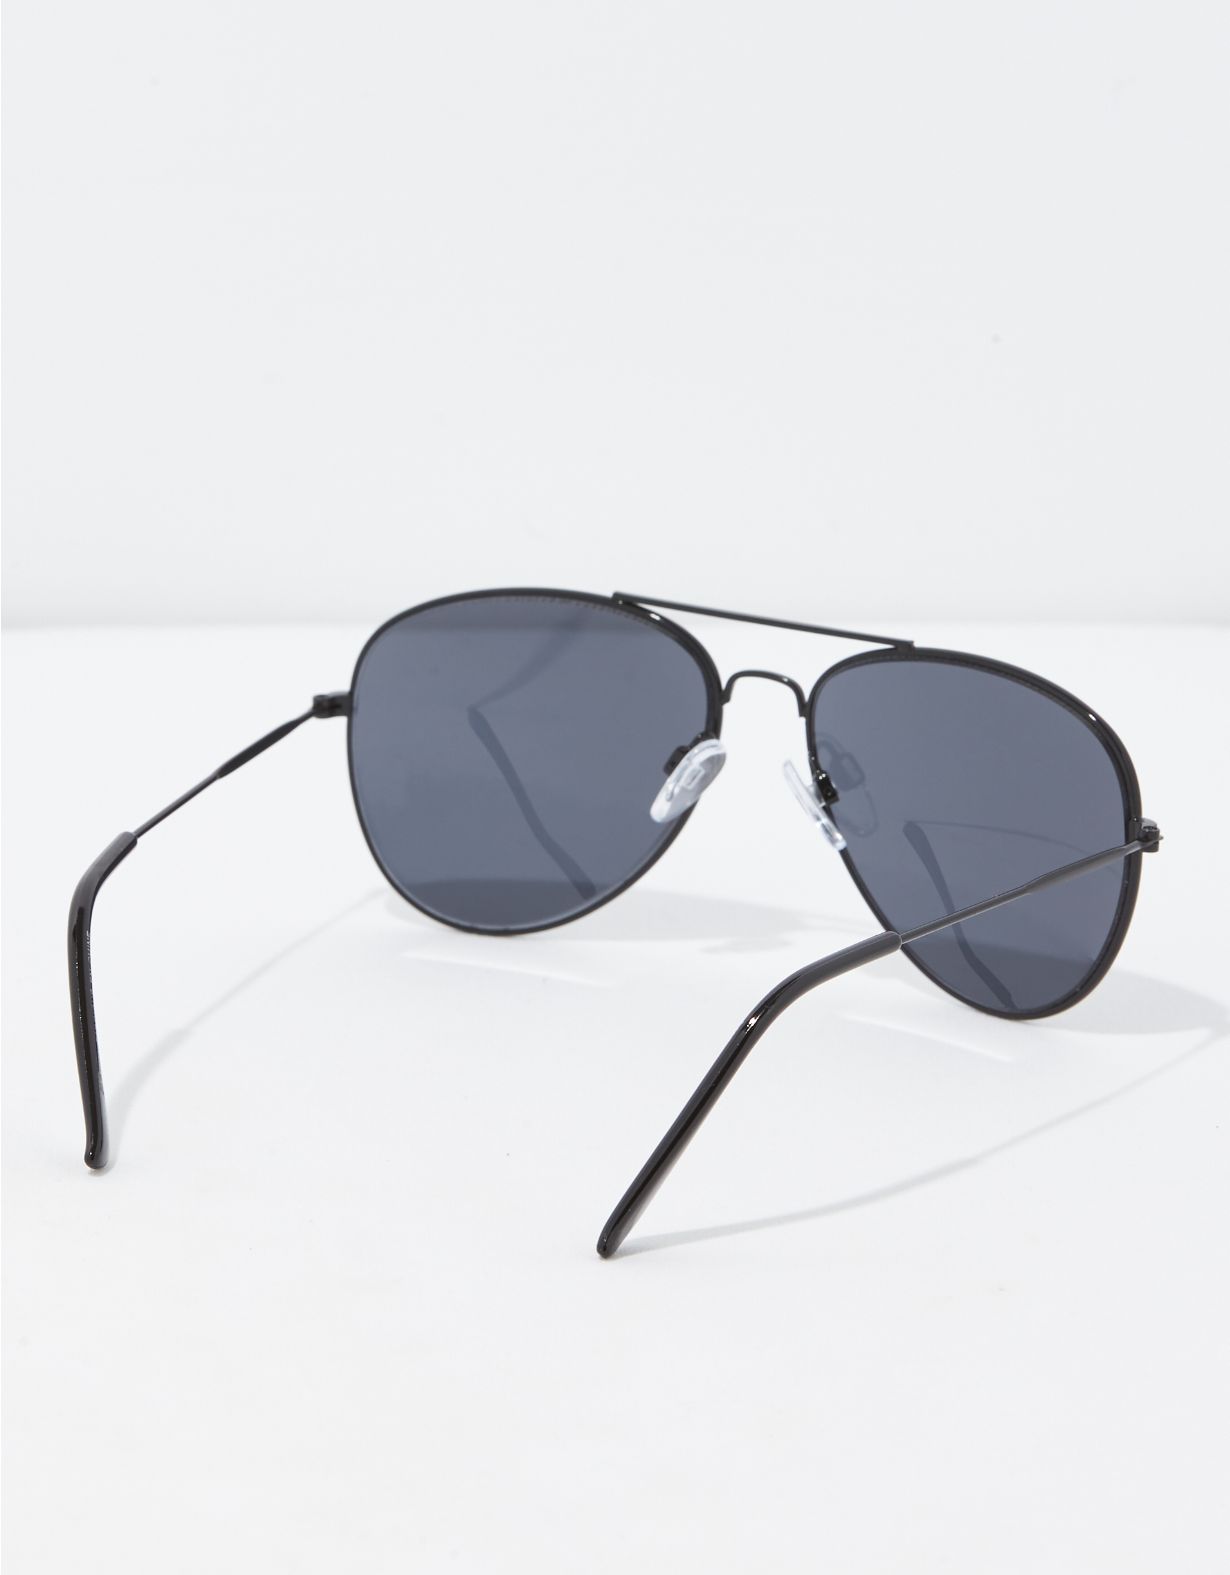 AEO Classic Black Sunglasses